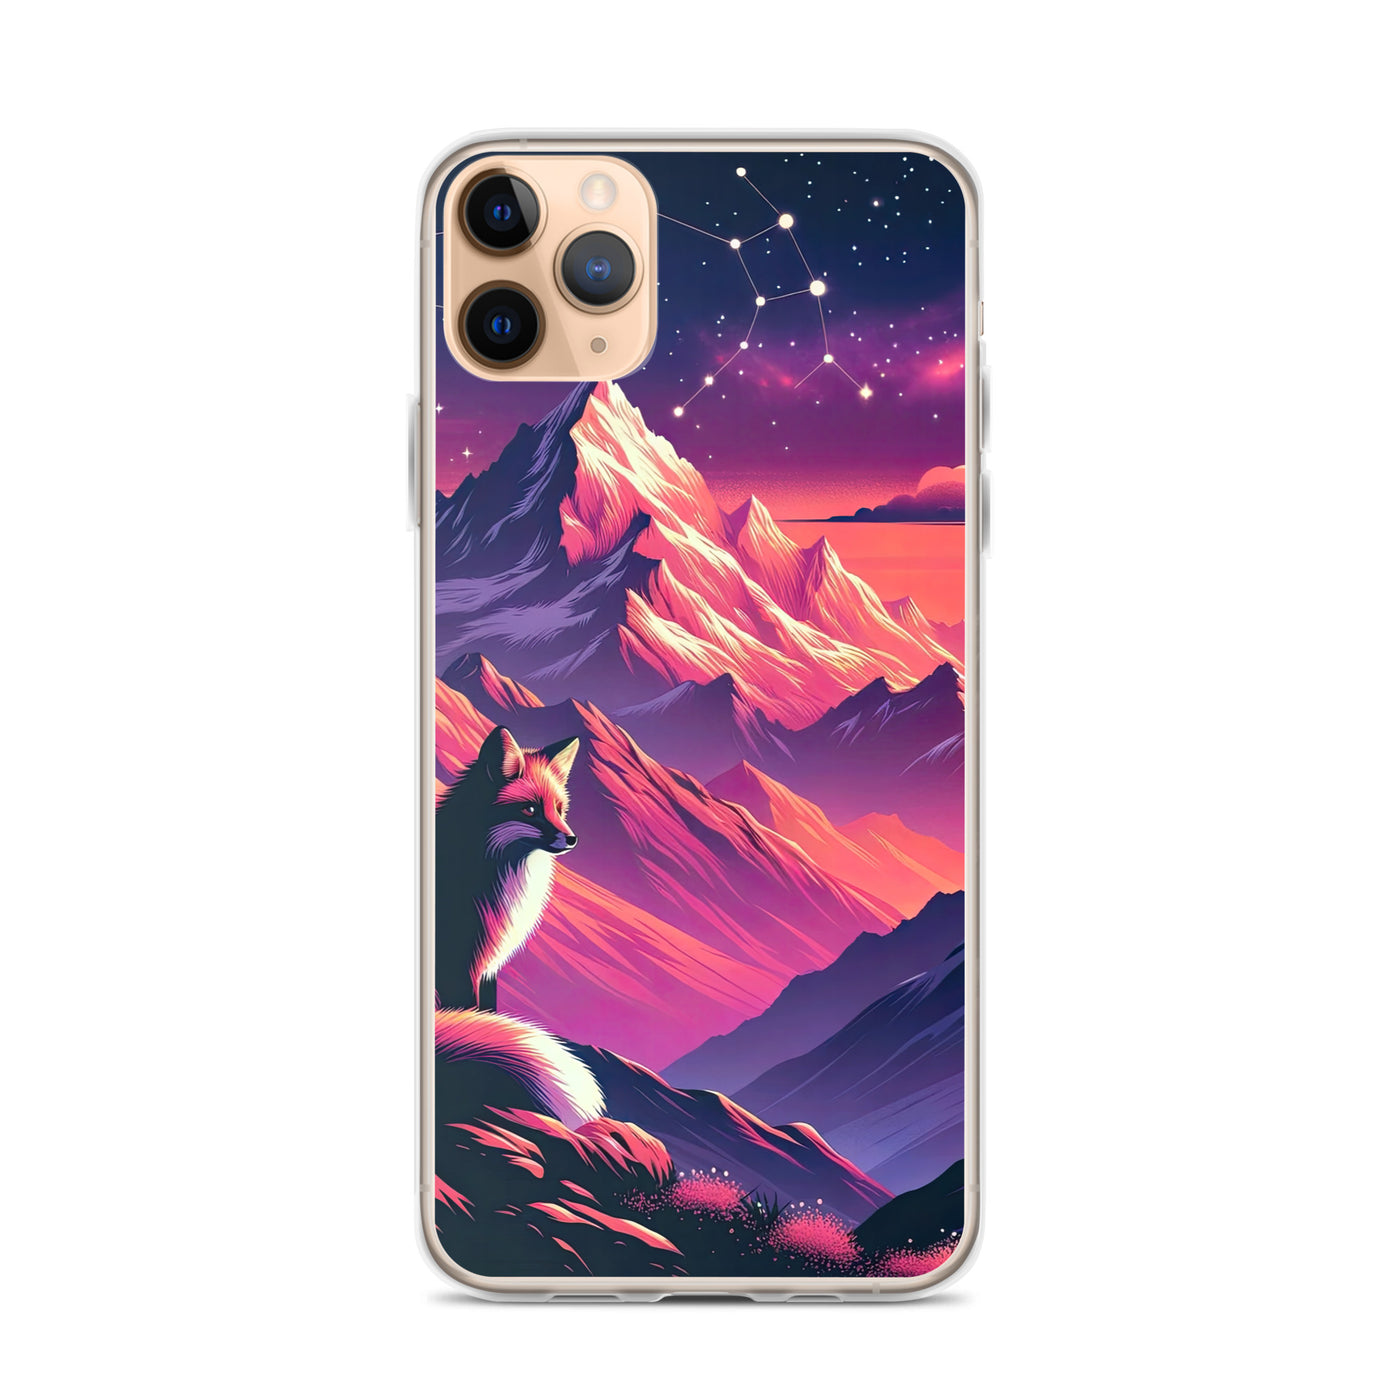 Fuchs im dramatischen Sonnenuntergang: Digitale Bergillustration in Abendfarben - iPhone Schutzhülle (durchsichtig) camping xxx yyy zzz iPhone 11 Pro Max